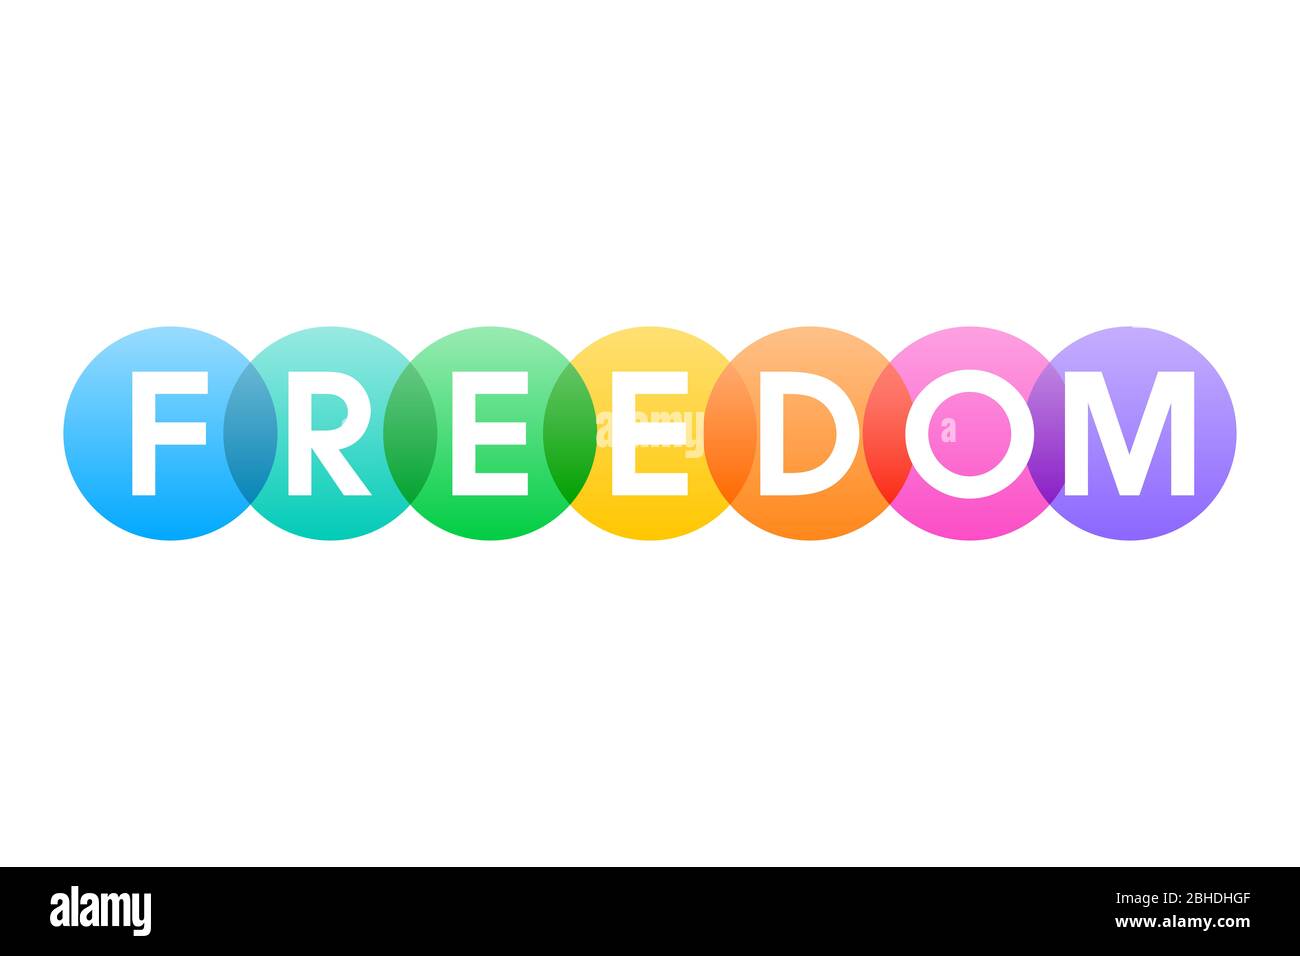 LIBERTÀ, lettere della parola in grassetto bianco capitelli mostrati su cerchi traslucidi arcobaleno sovrapposti. Illustrazione isolata su bianco. Foto Stock